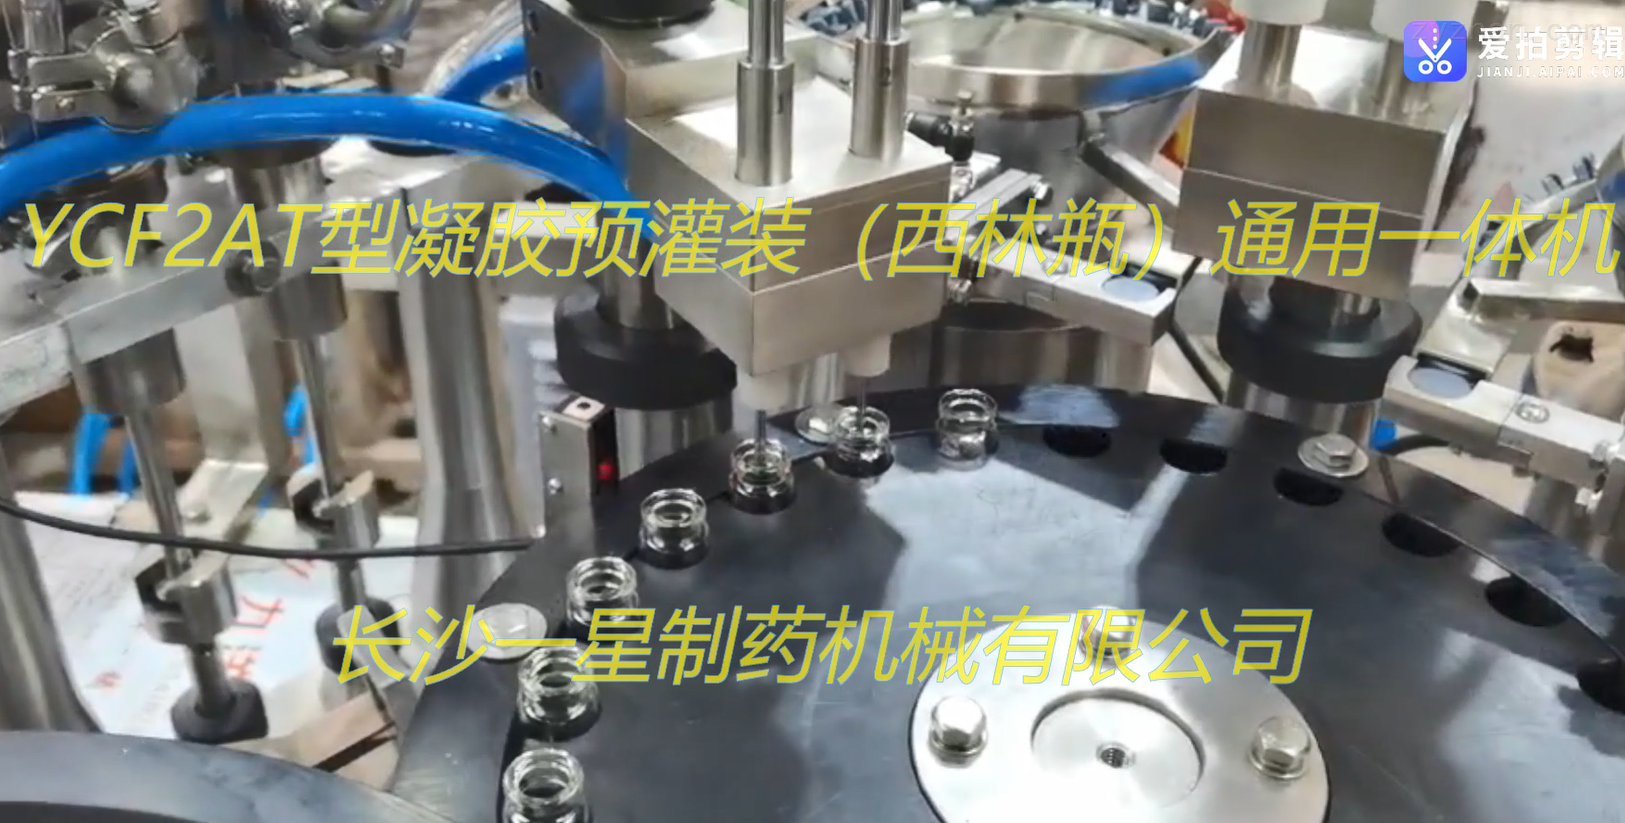 YCF2AT型凝胶预灌装（西林瓶）通用一体机的视频展示